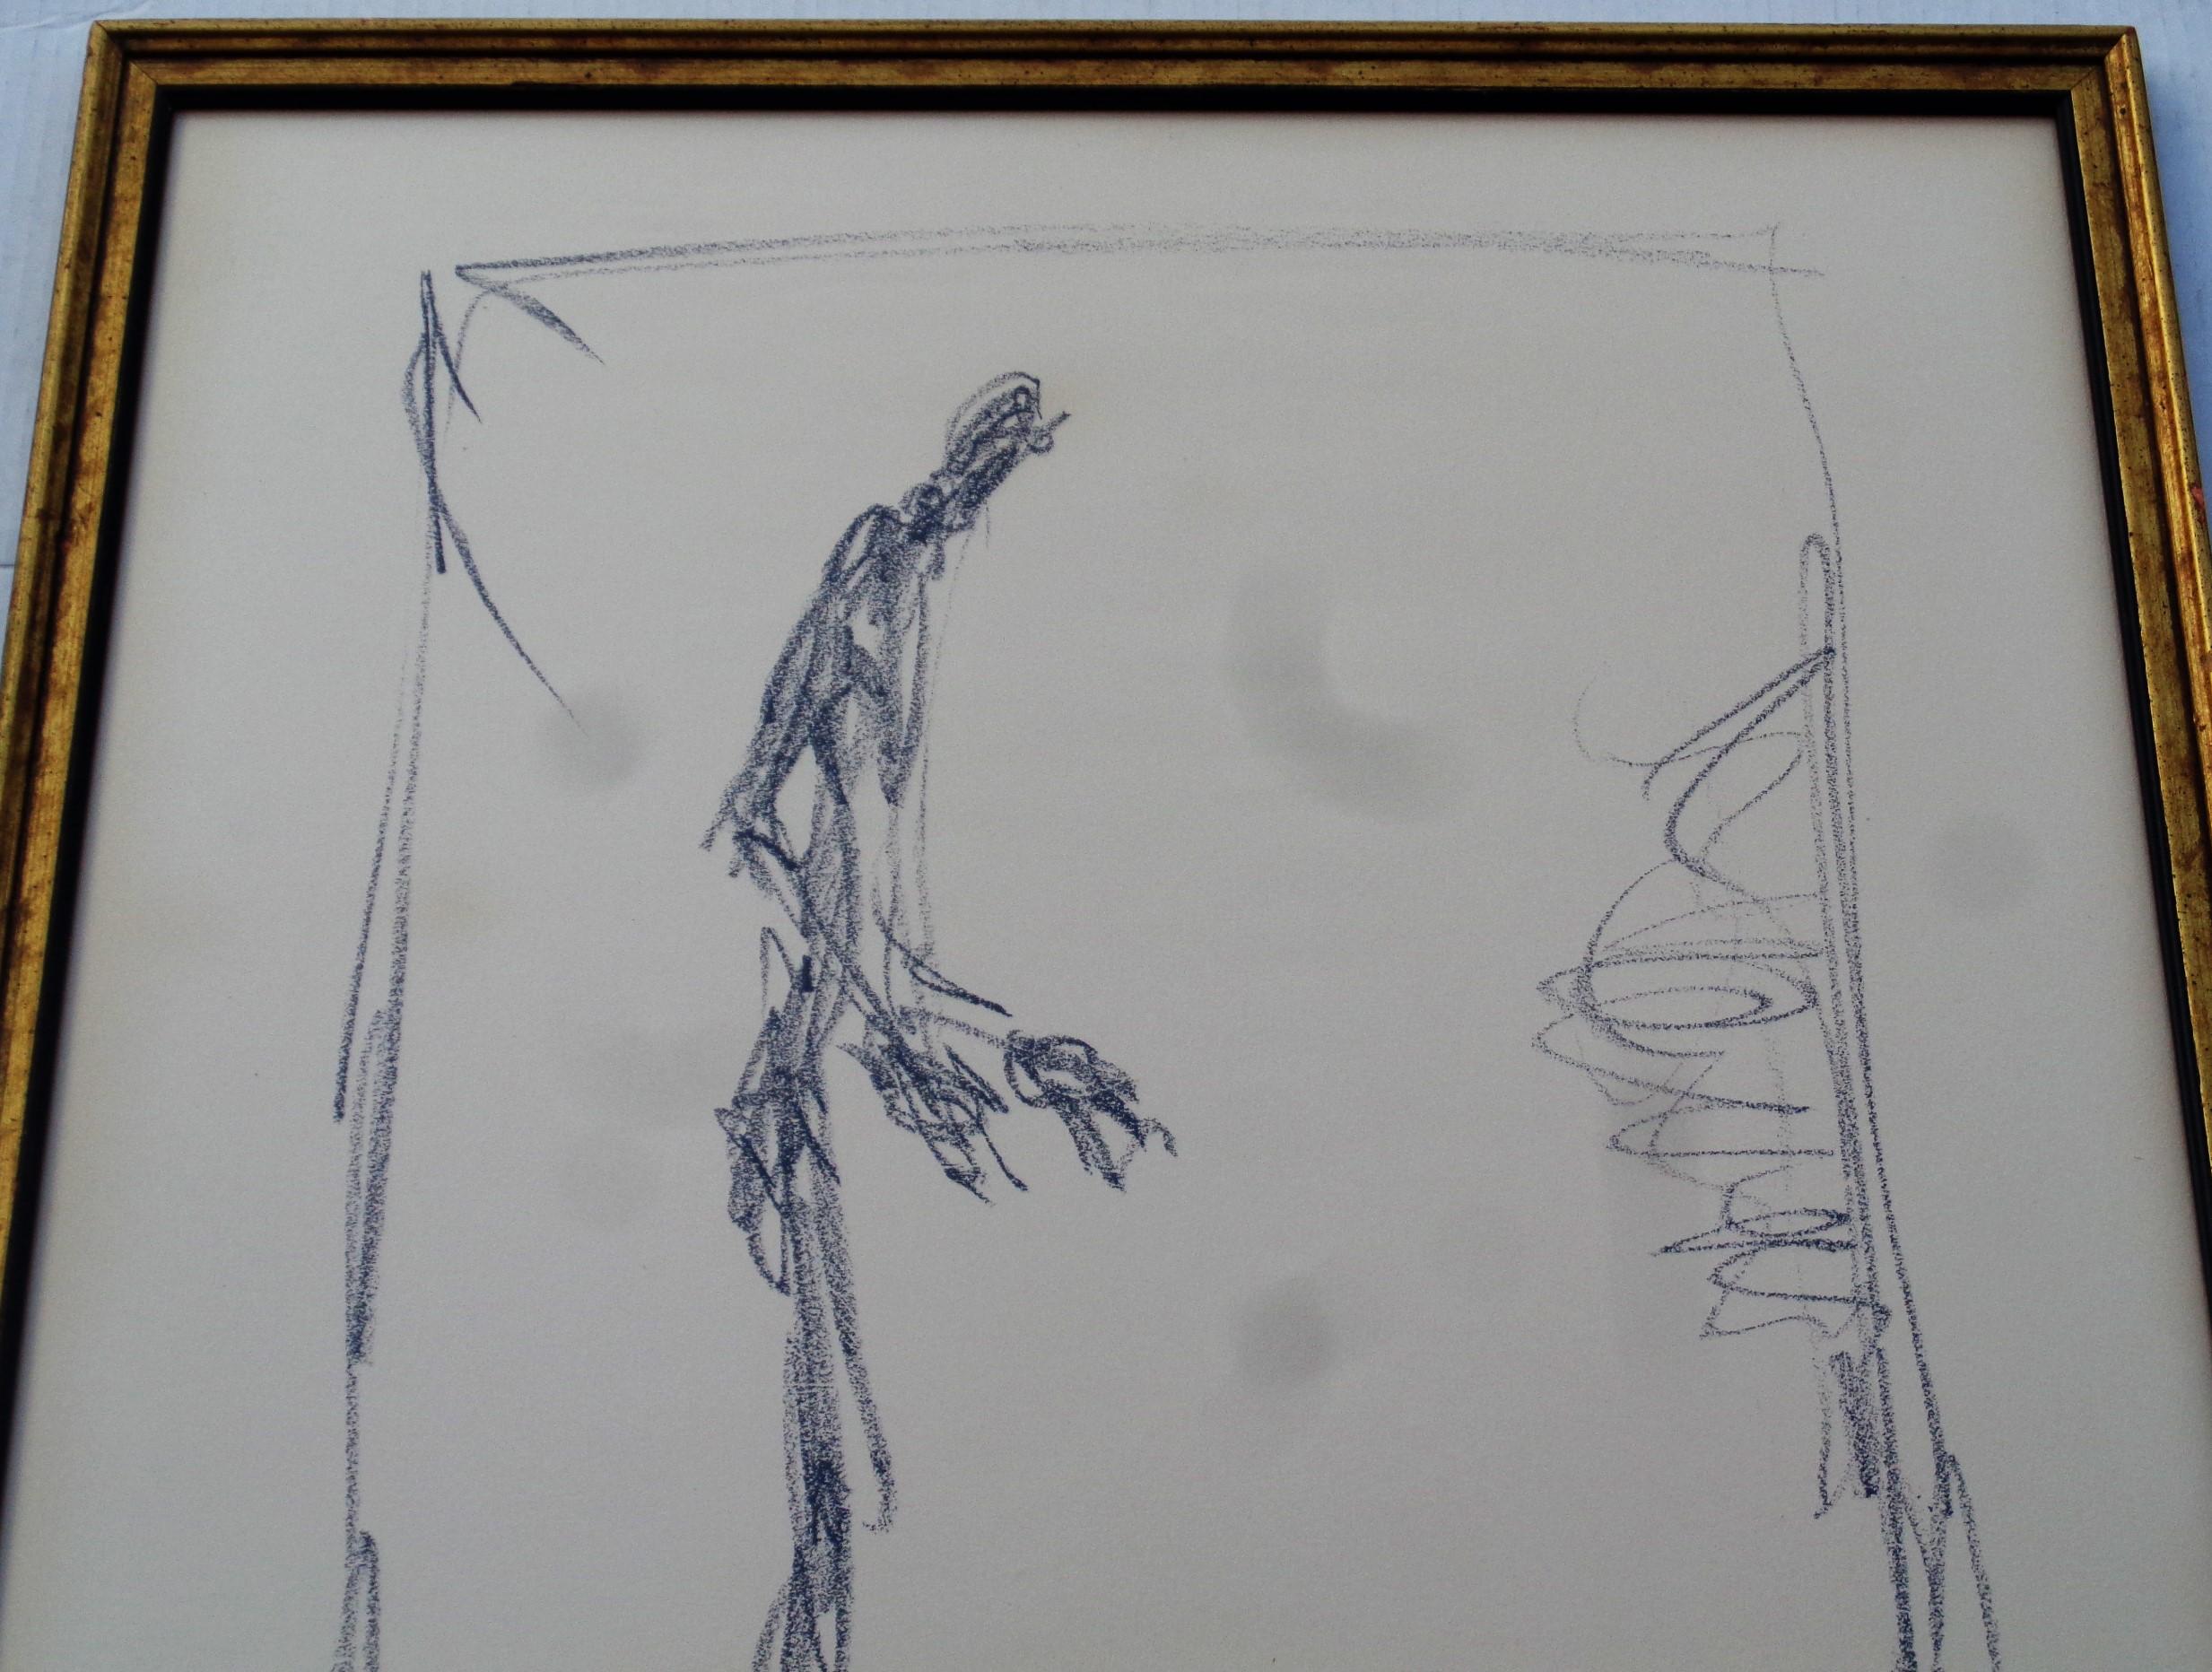 Nach Alberto Giacometti - Dessin 1 - großformatige Lithographie auf Hadernpapier in altem Goldholzrahmen unter Glas (originales altes Label des Einrahmers auf der Rückseite - Empire Artist's Materials / 831 Lexington Avenue N.Y. 10021  / Phone RE